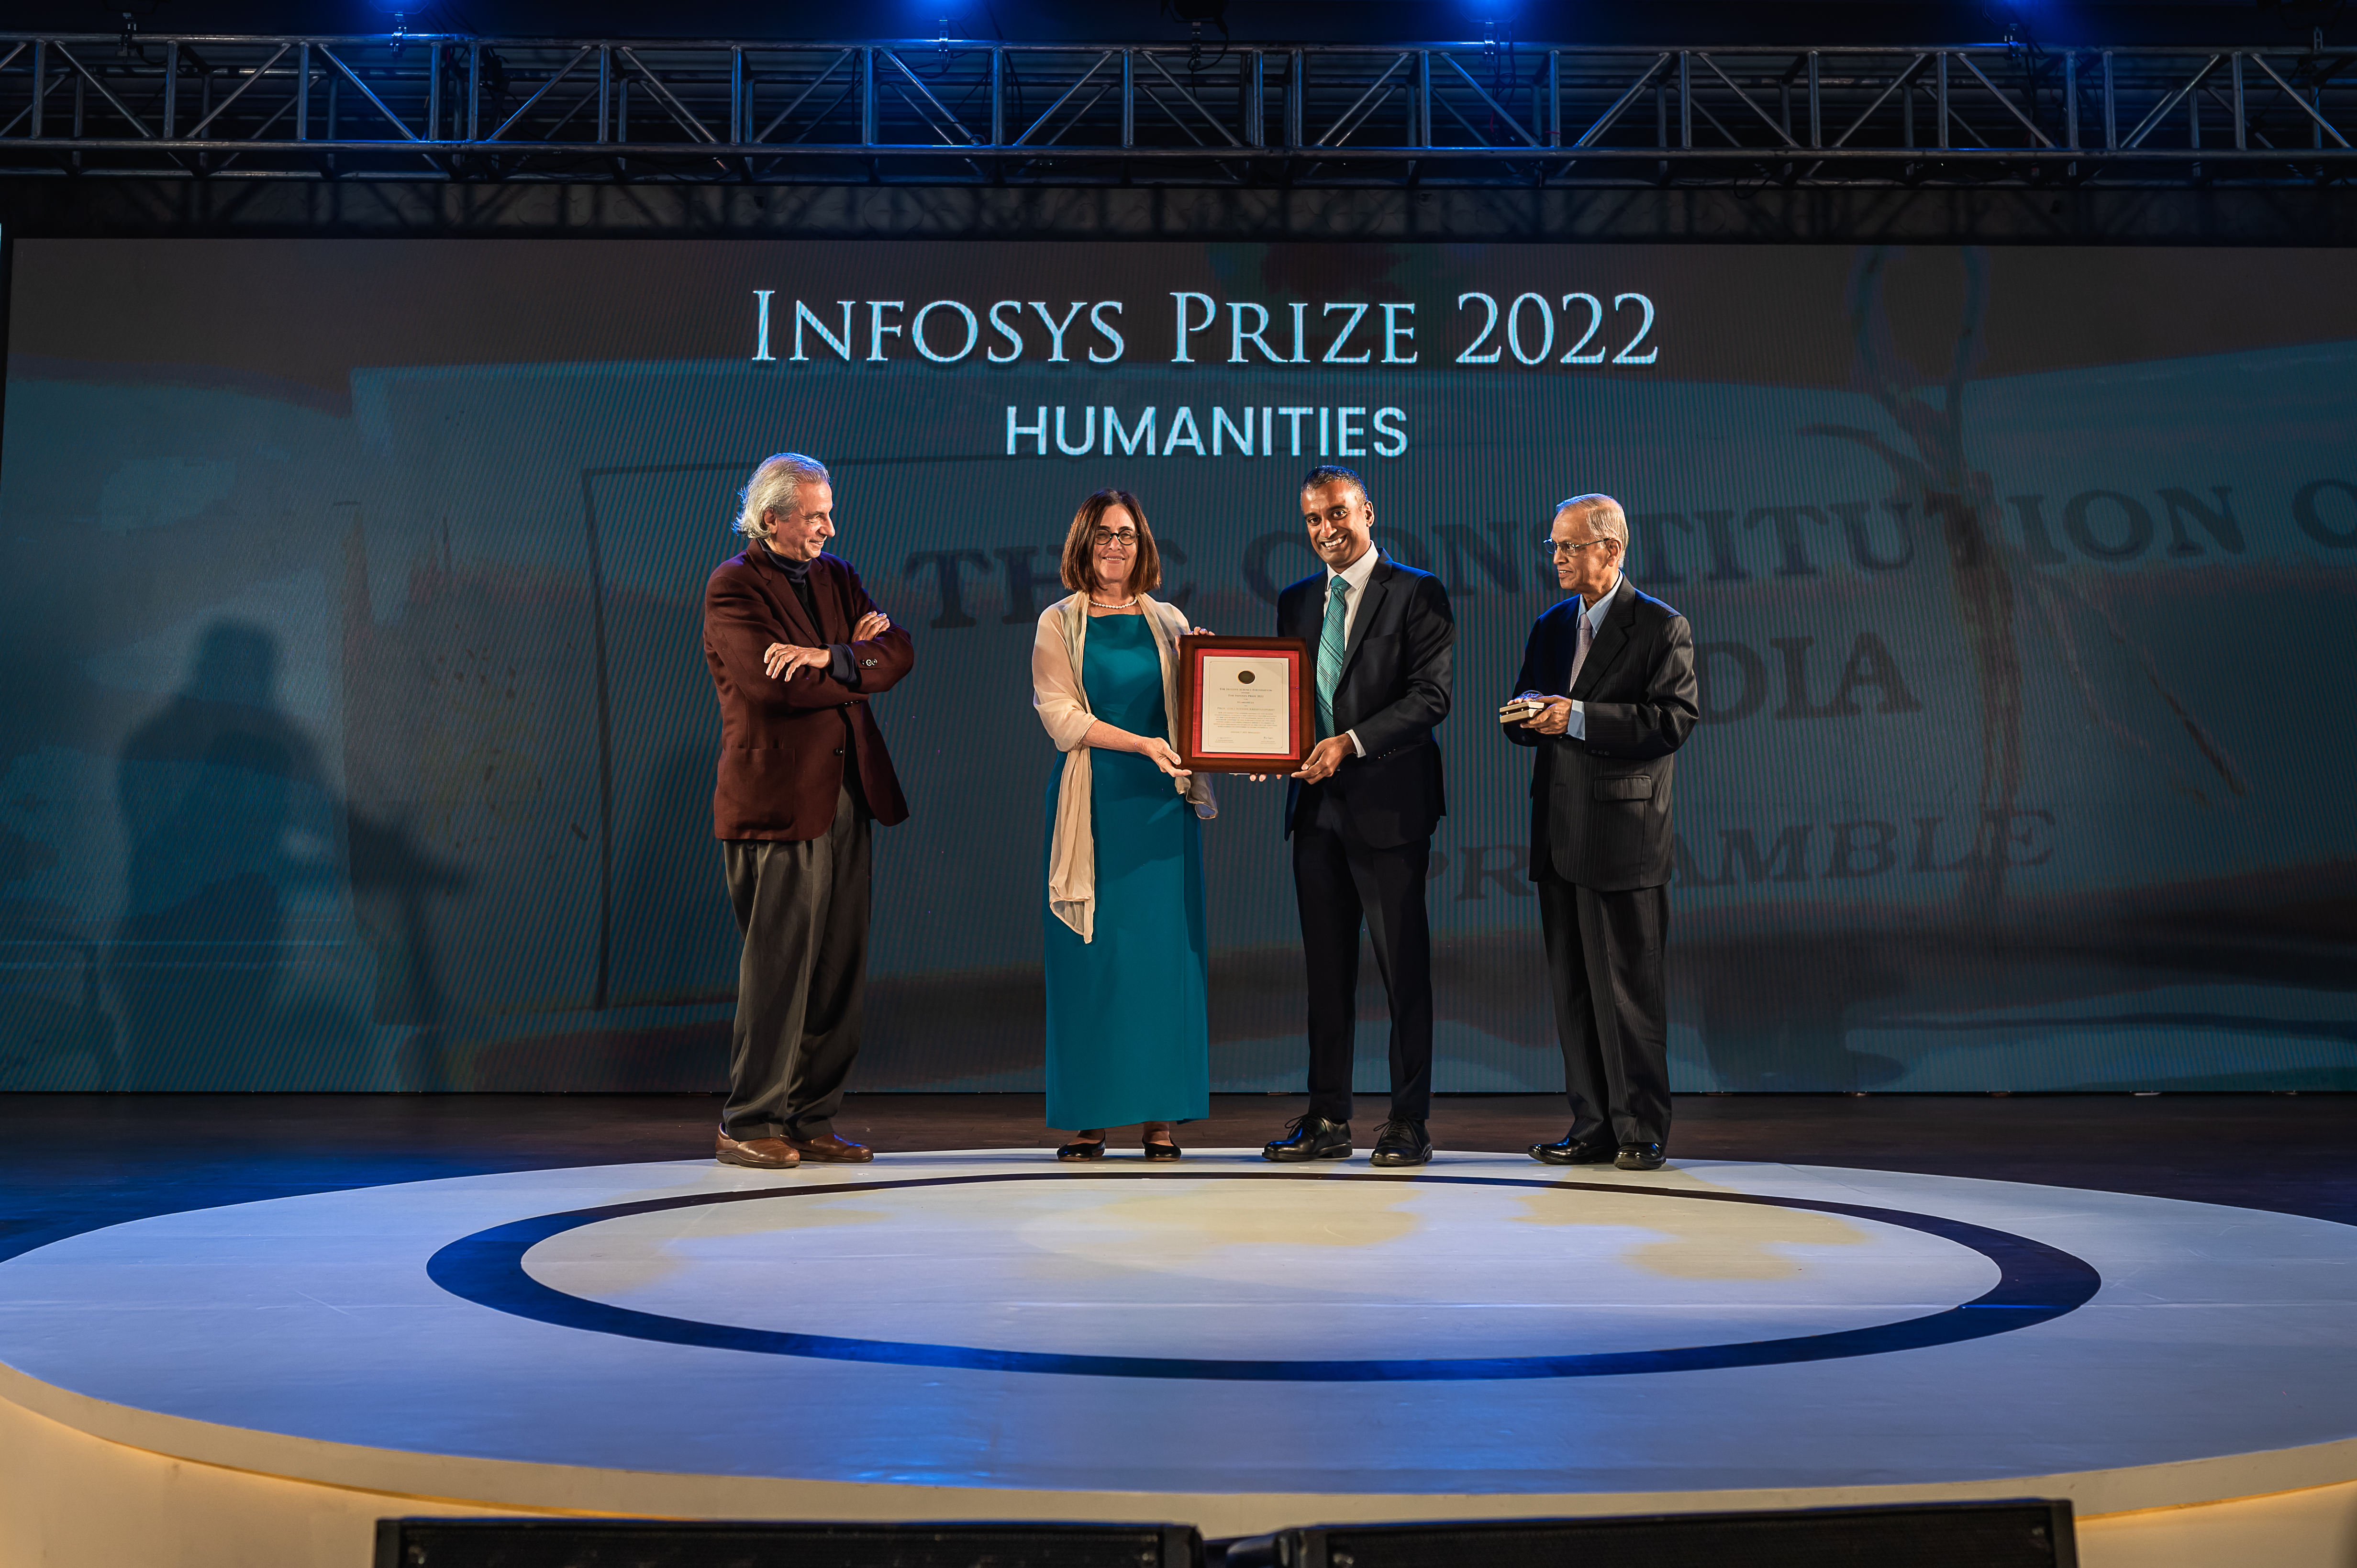 Prof. Akeel Bilgrami, Prof. Shafi Goldwasser and Mr. Narayana Murthy presenting the Infosys Prize 2022 to Prof. Sudhir Krishnaswamy